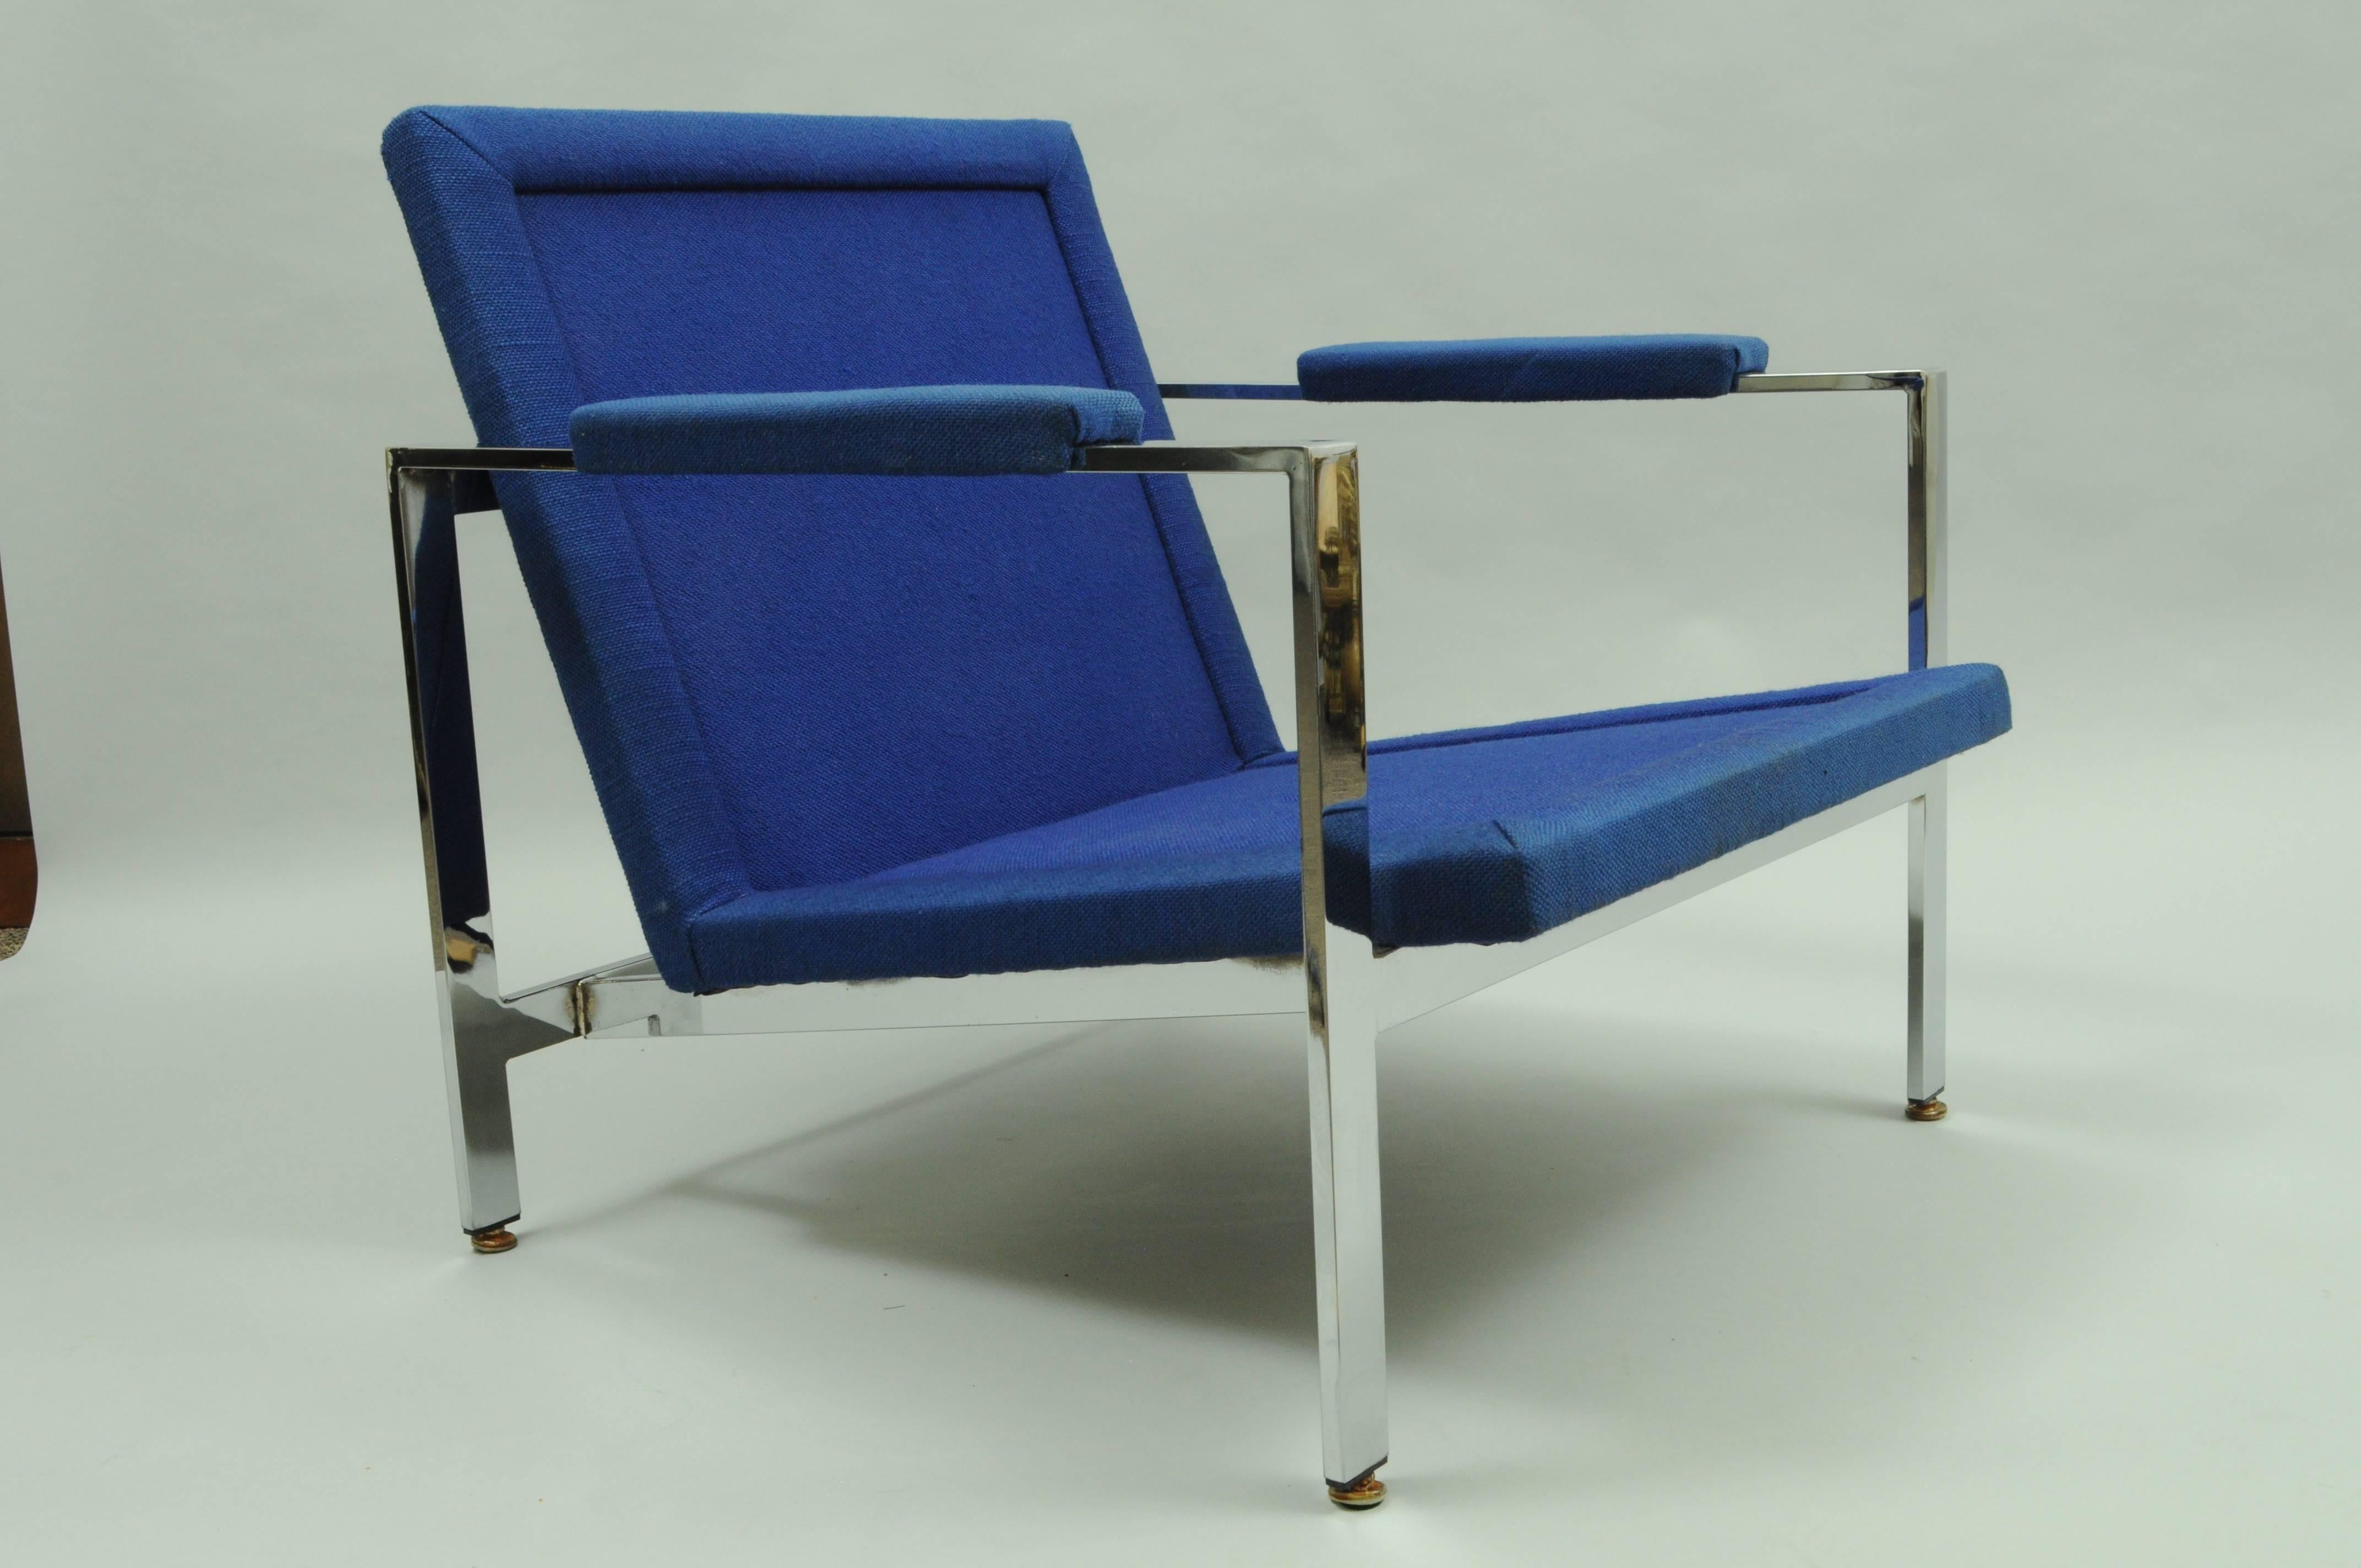 Magnifique fauteuil club vintage de style moderne du milieu du siècle, à barre plate et chromé, attribué à Milo Baughman pour Thayer Coggin. La chaise présente une structure élégante en chrome poli avec un siège et des accoudoirs rembourrés de